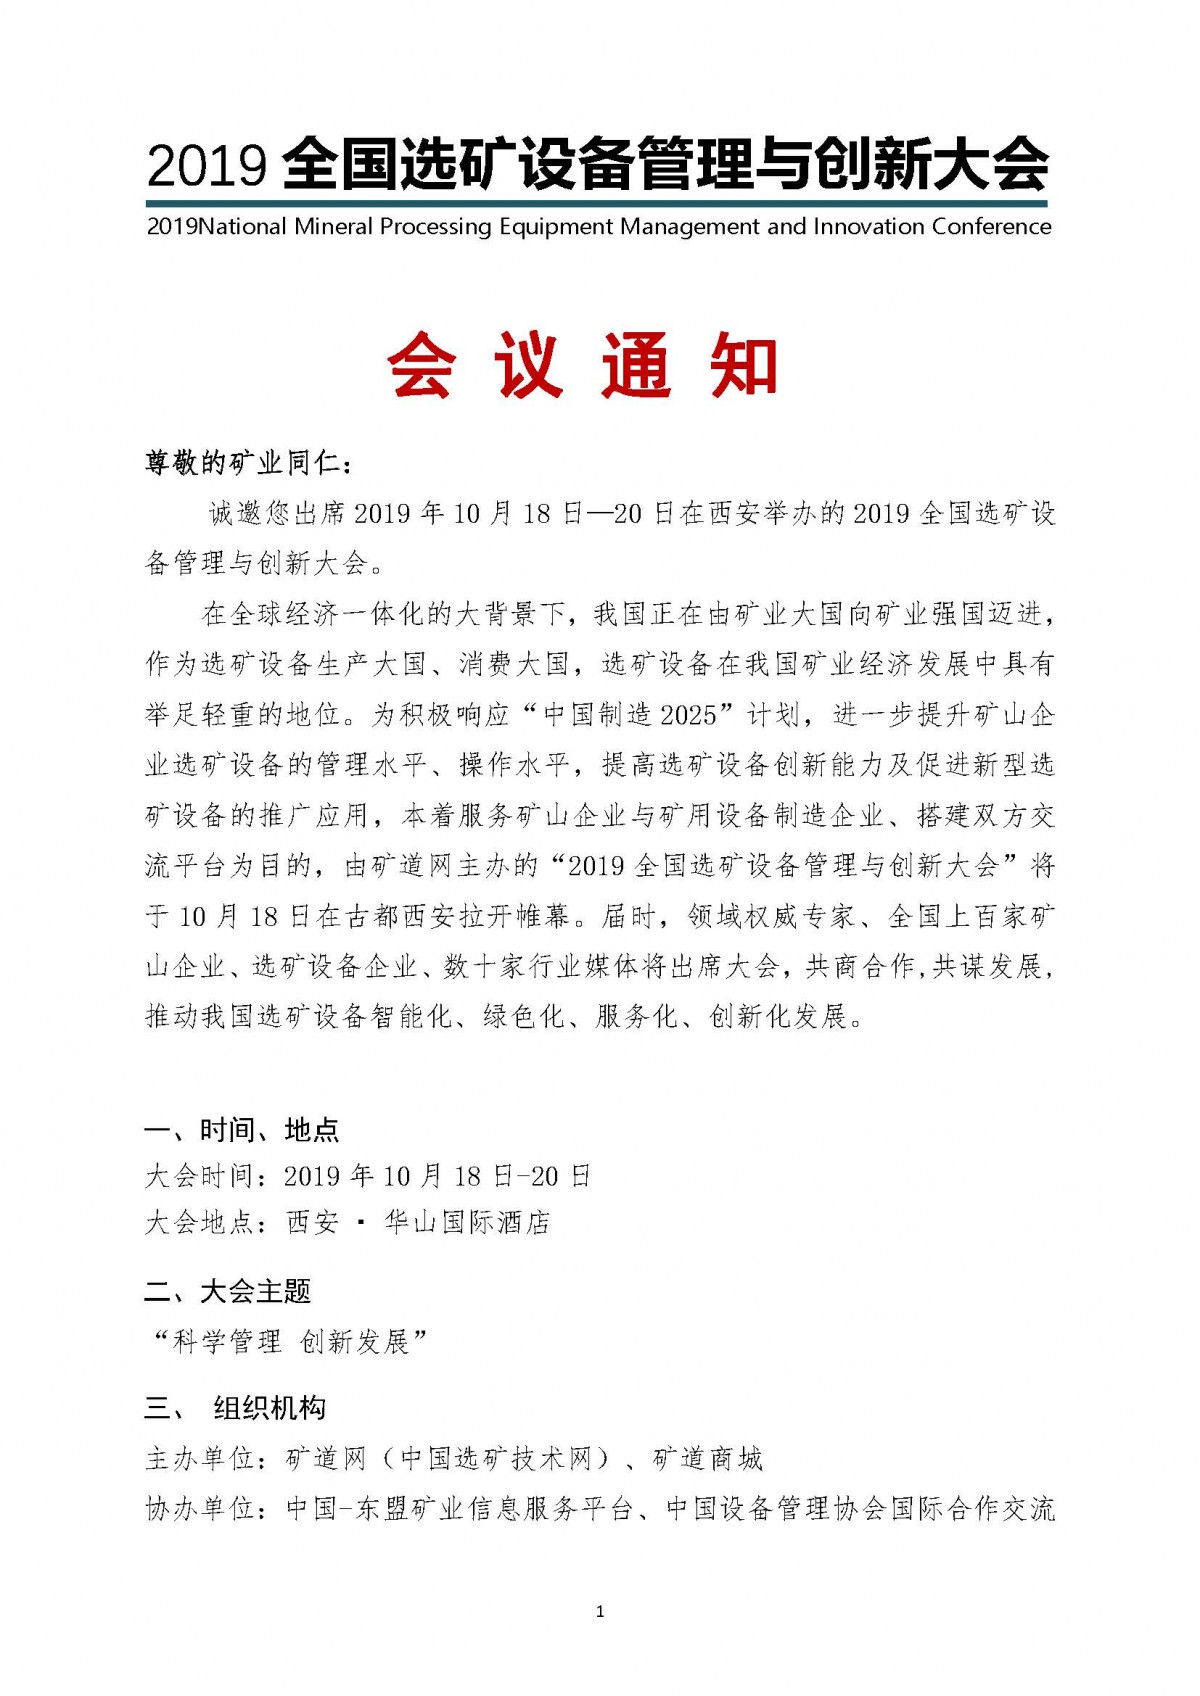 (刘晓会)会议通知—2019全国选矿设备管理与创新大会0909_页面_01